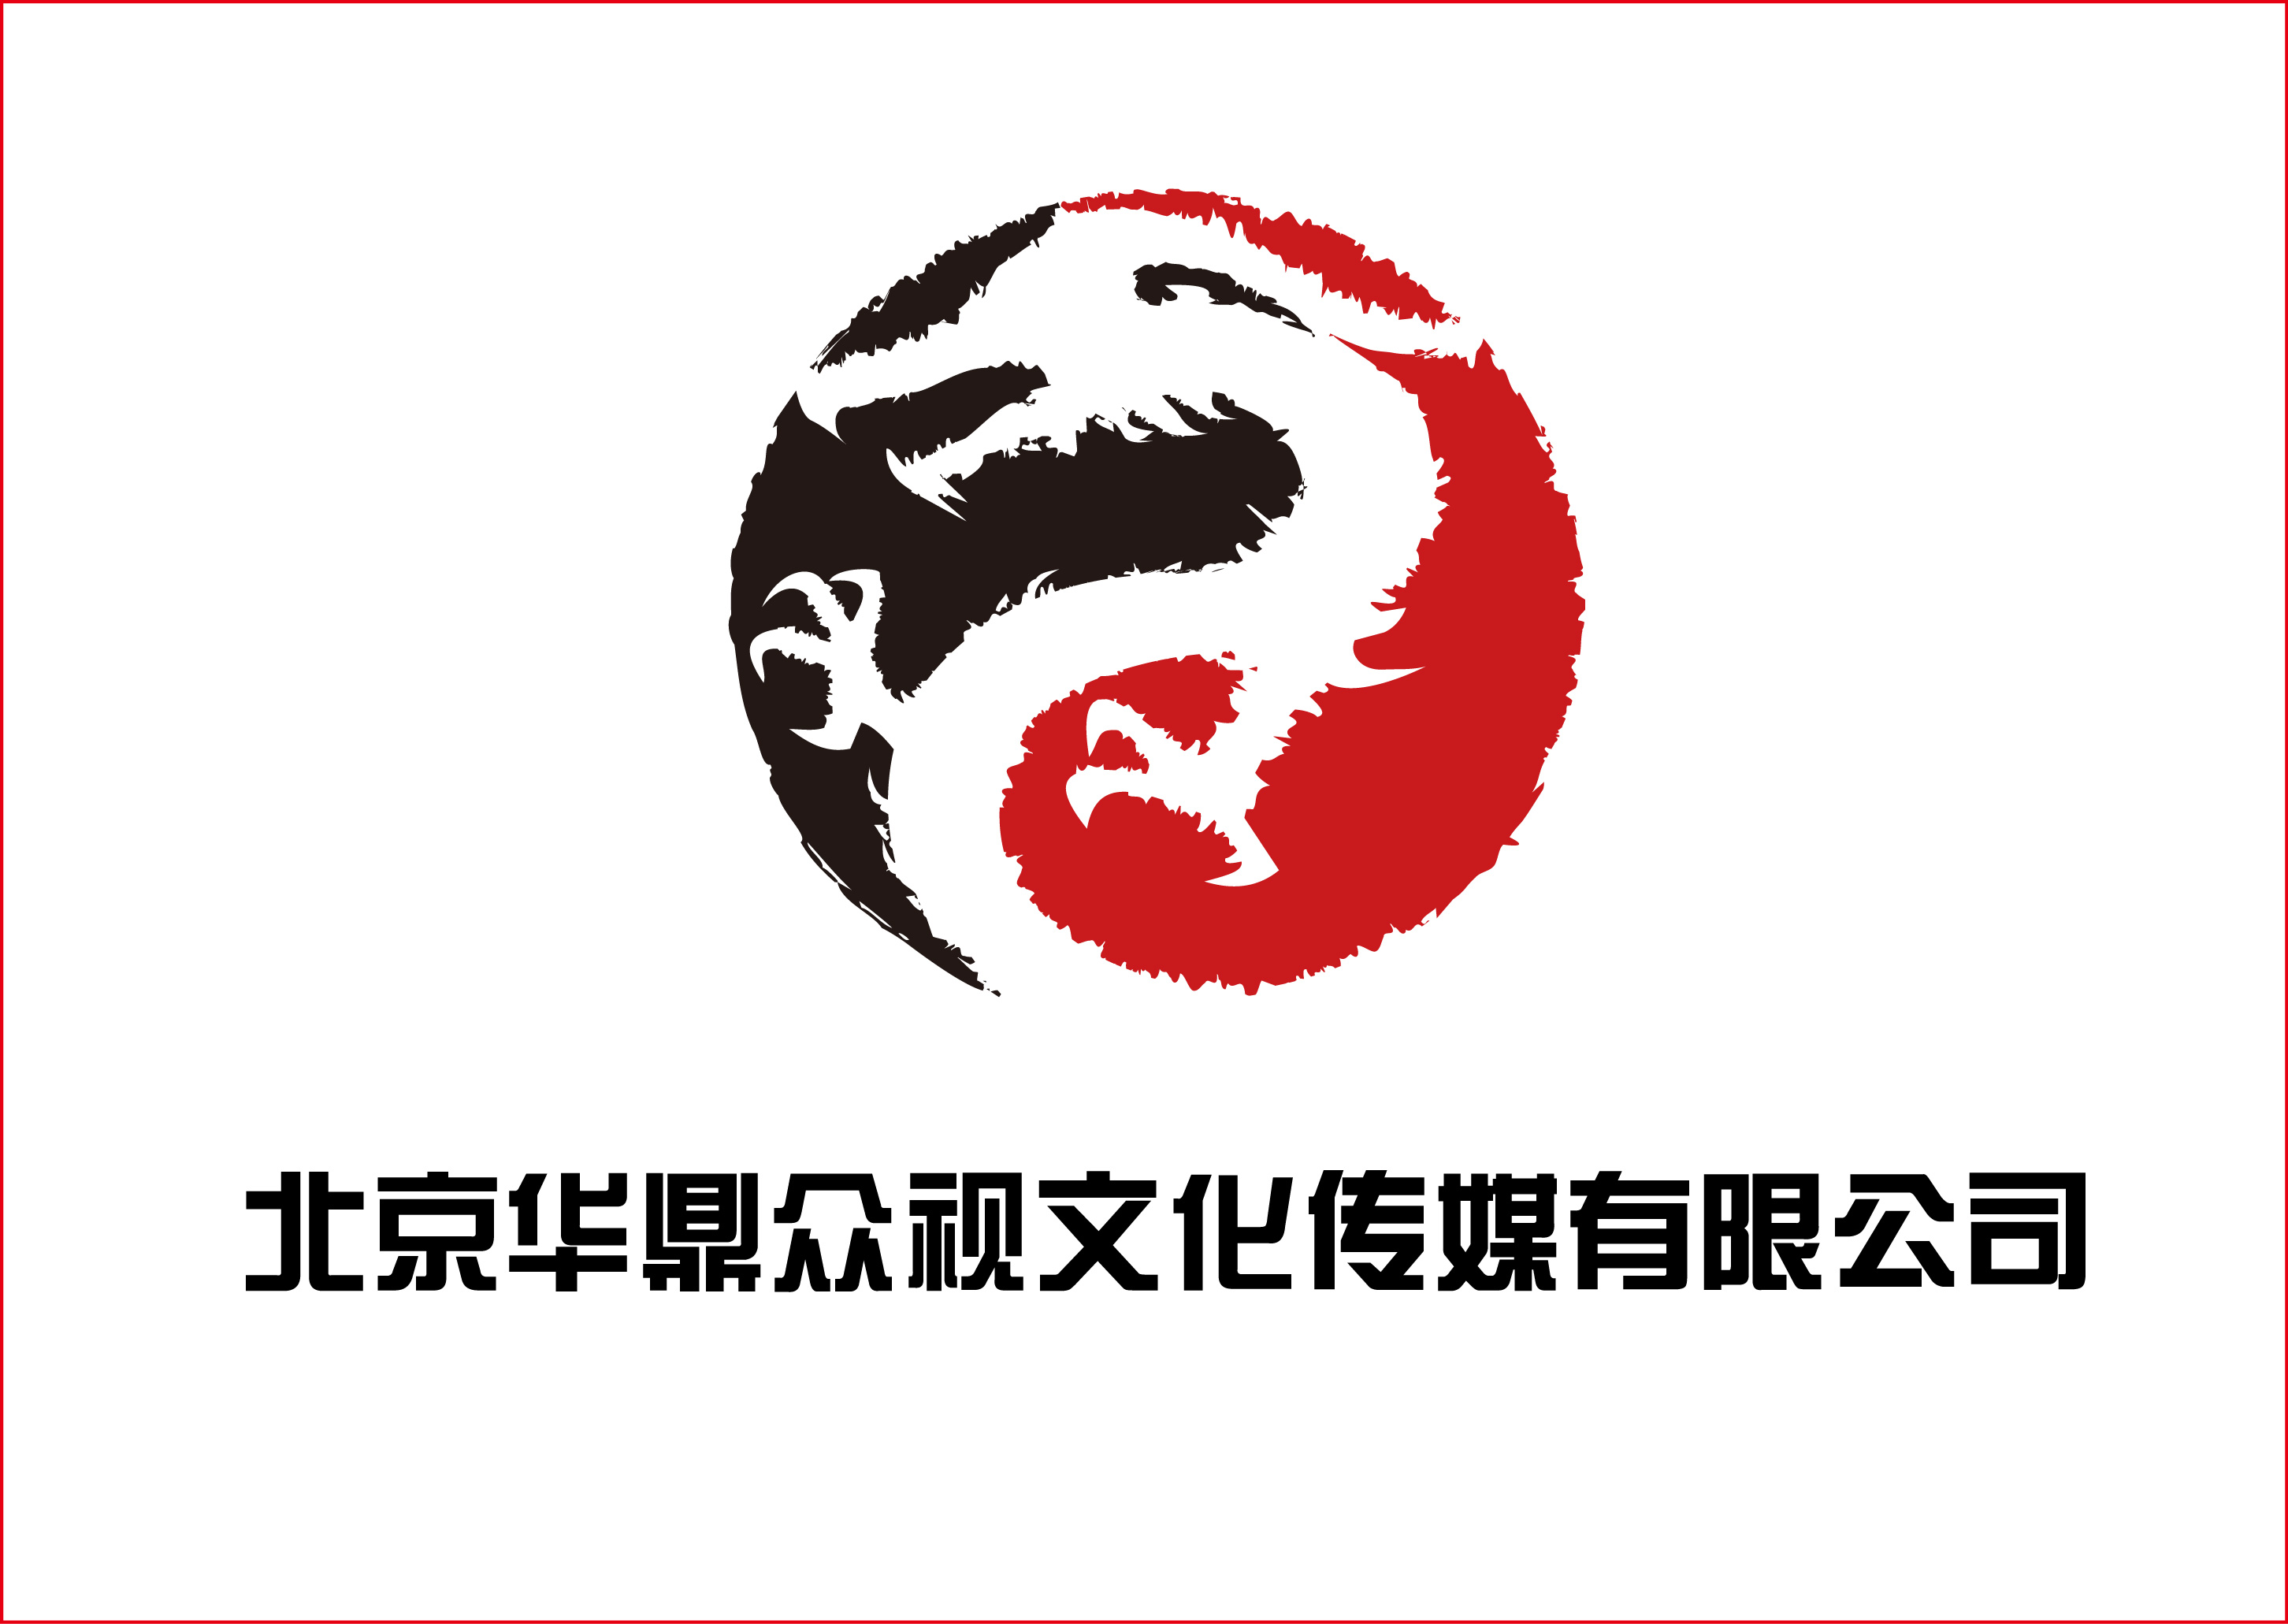 文化传媒公司logo设计(加急)